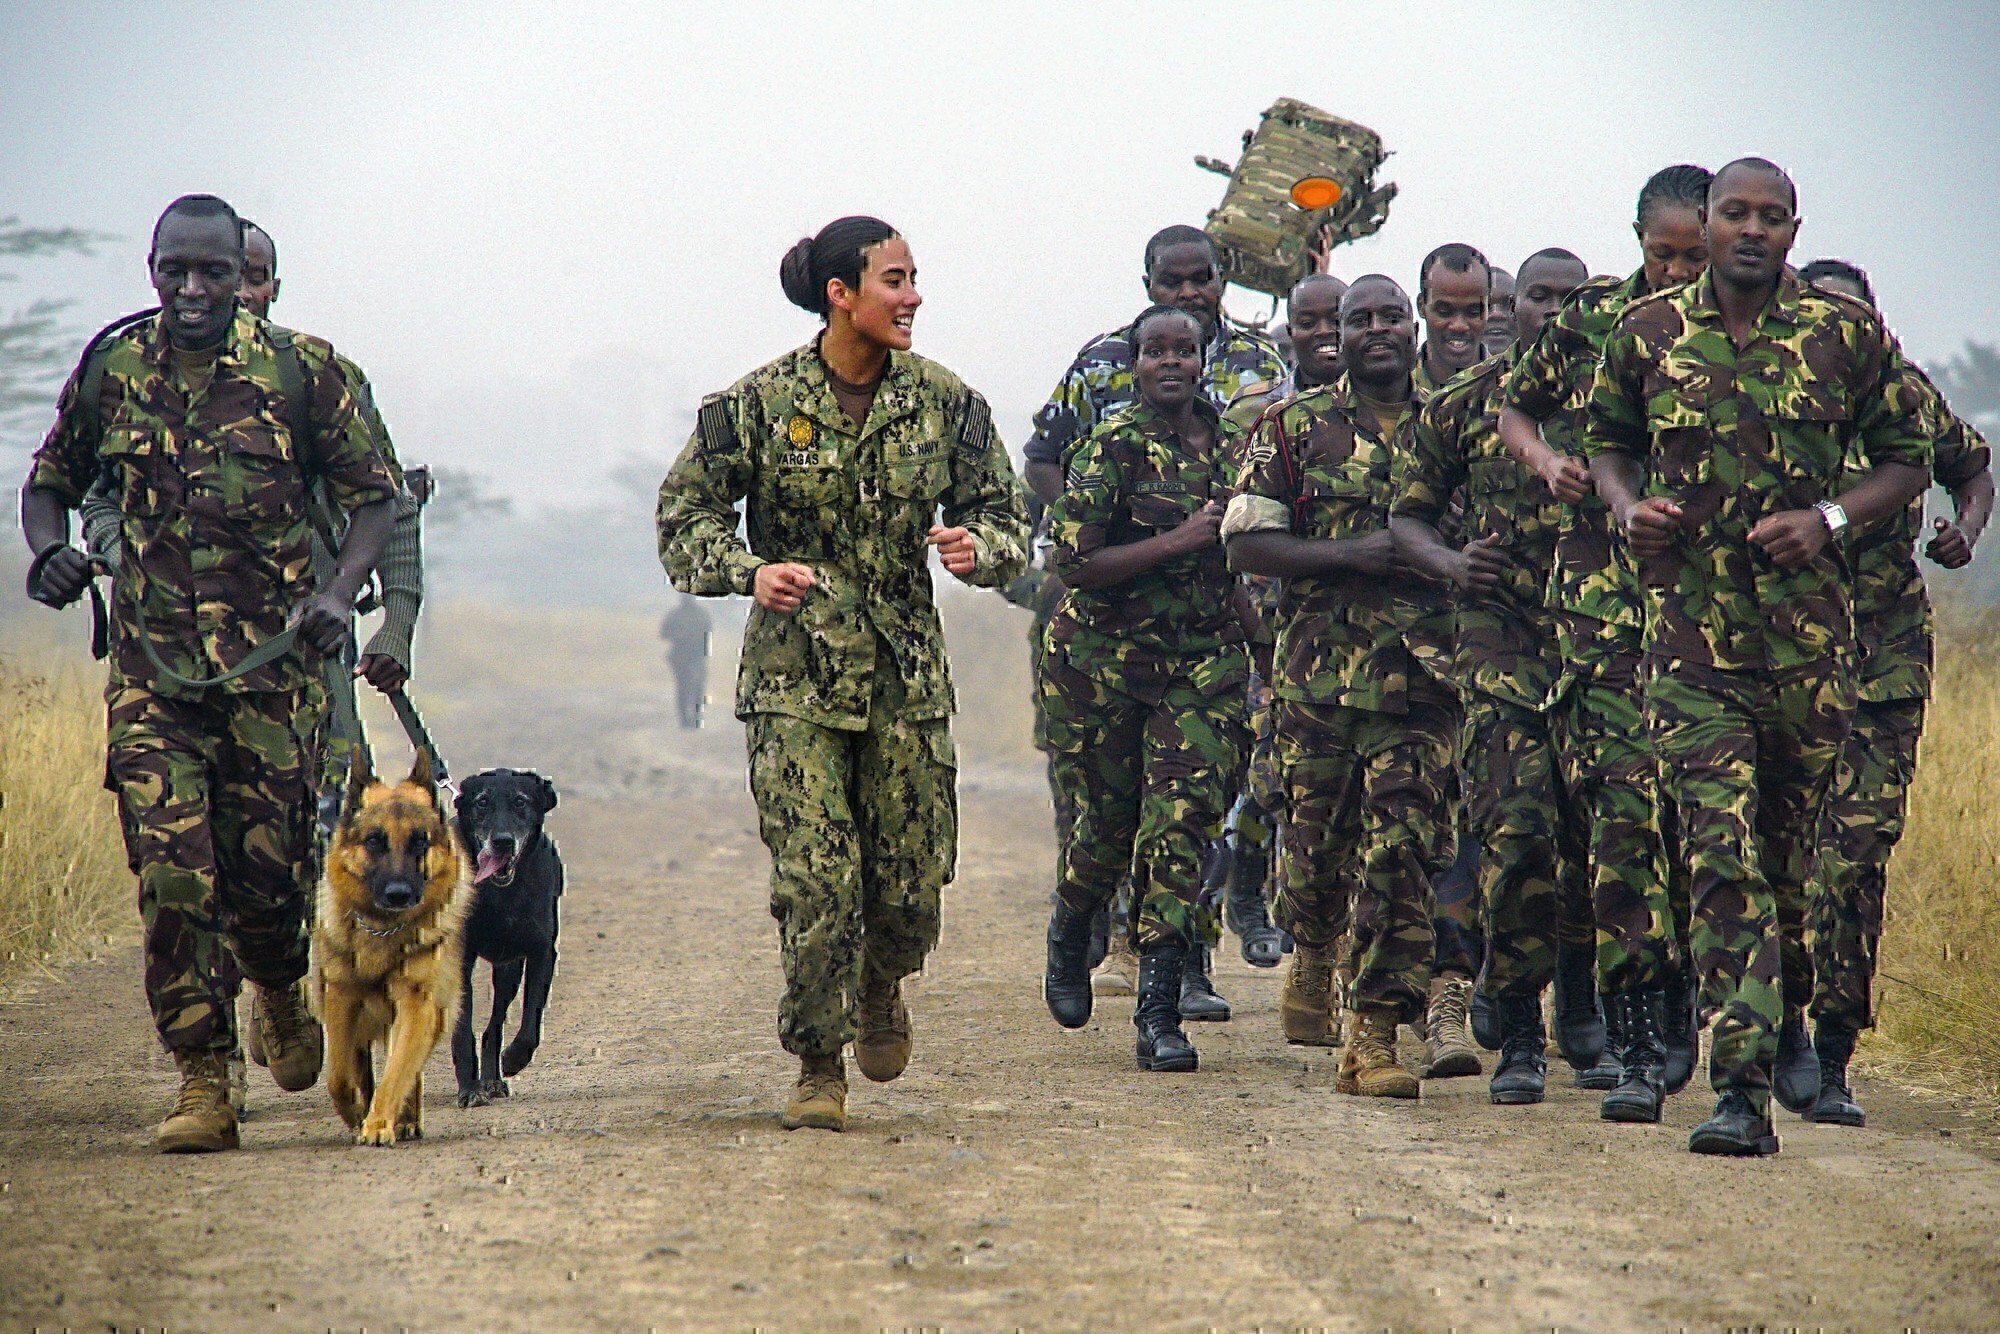 k9 unit dog veteran training